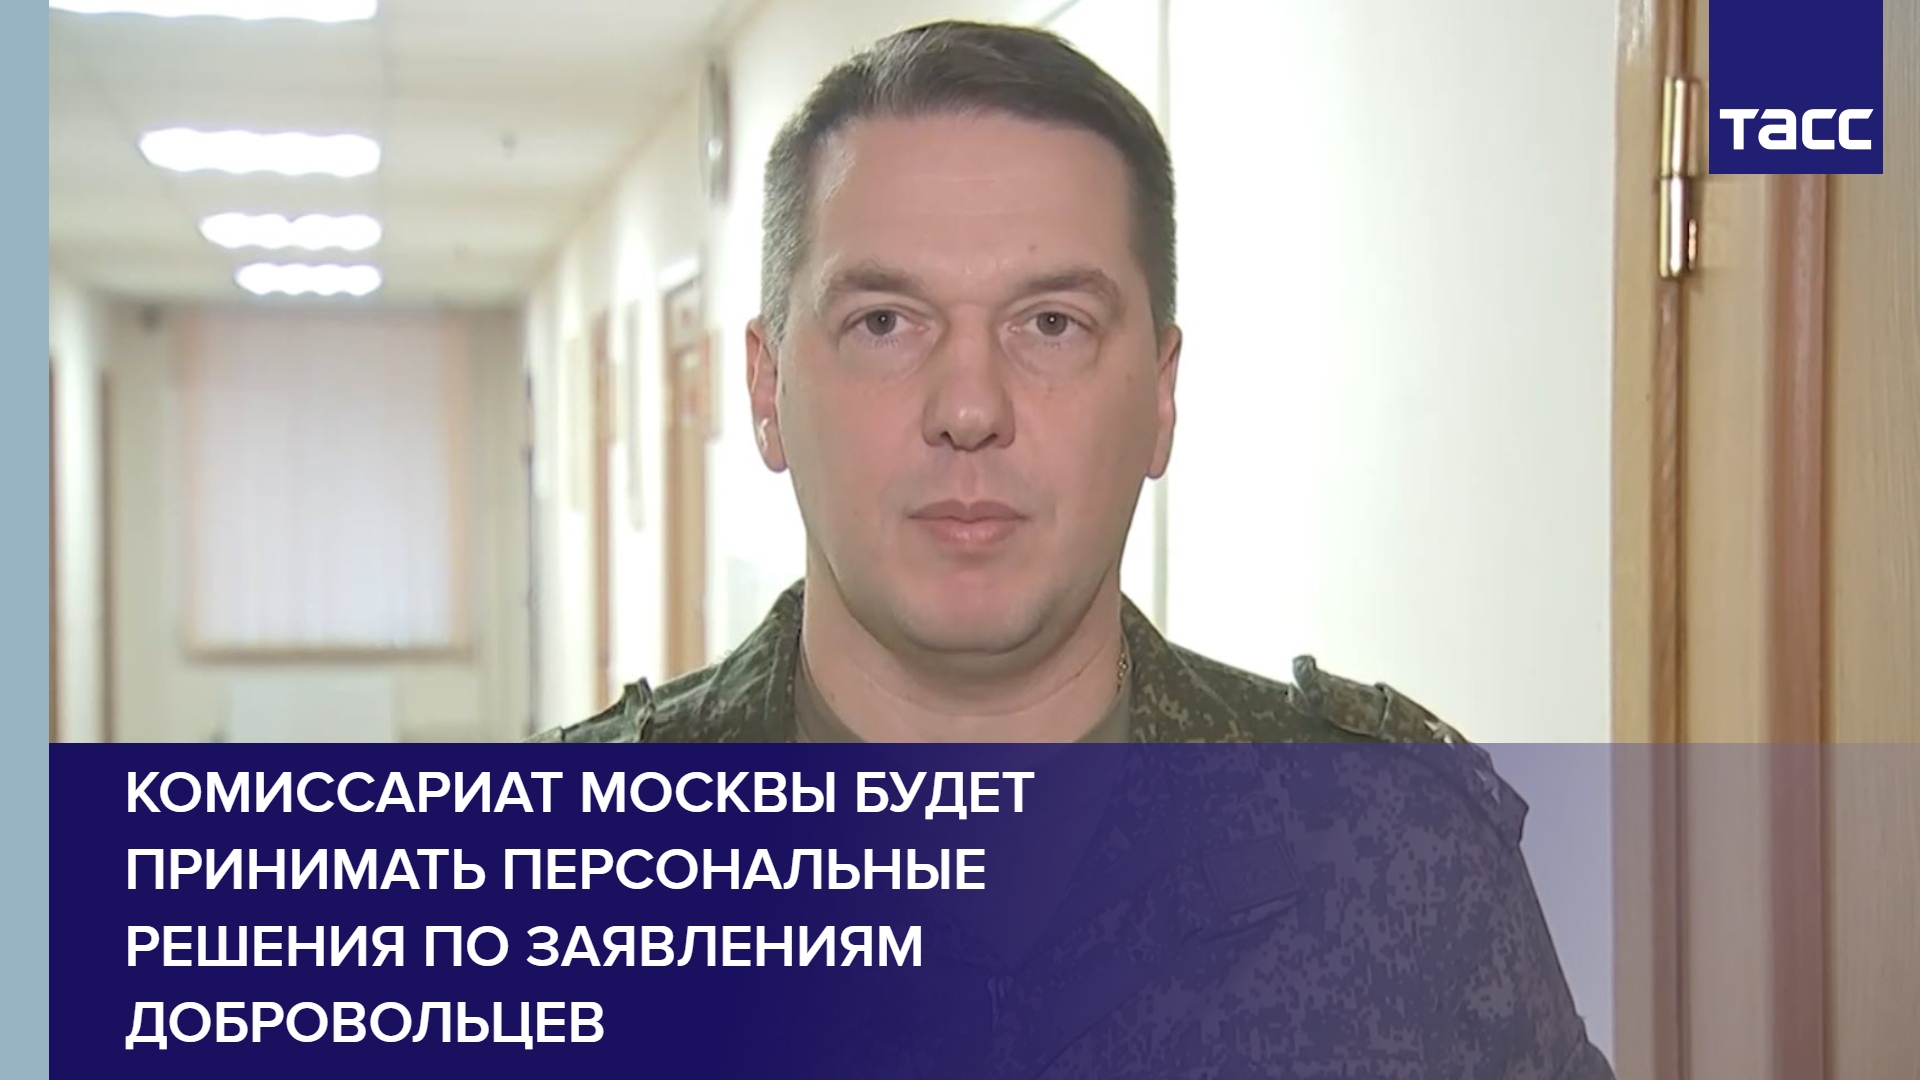 Комиссариат Москвы будет принимать персональные решения по заявлениям добровольцев #shorts